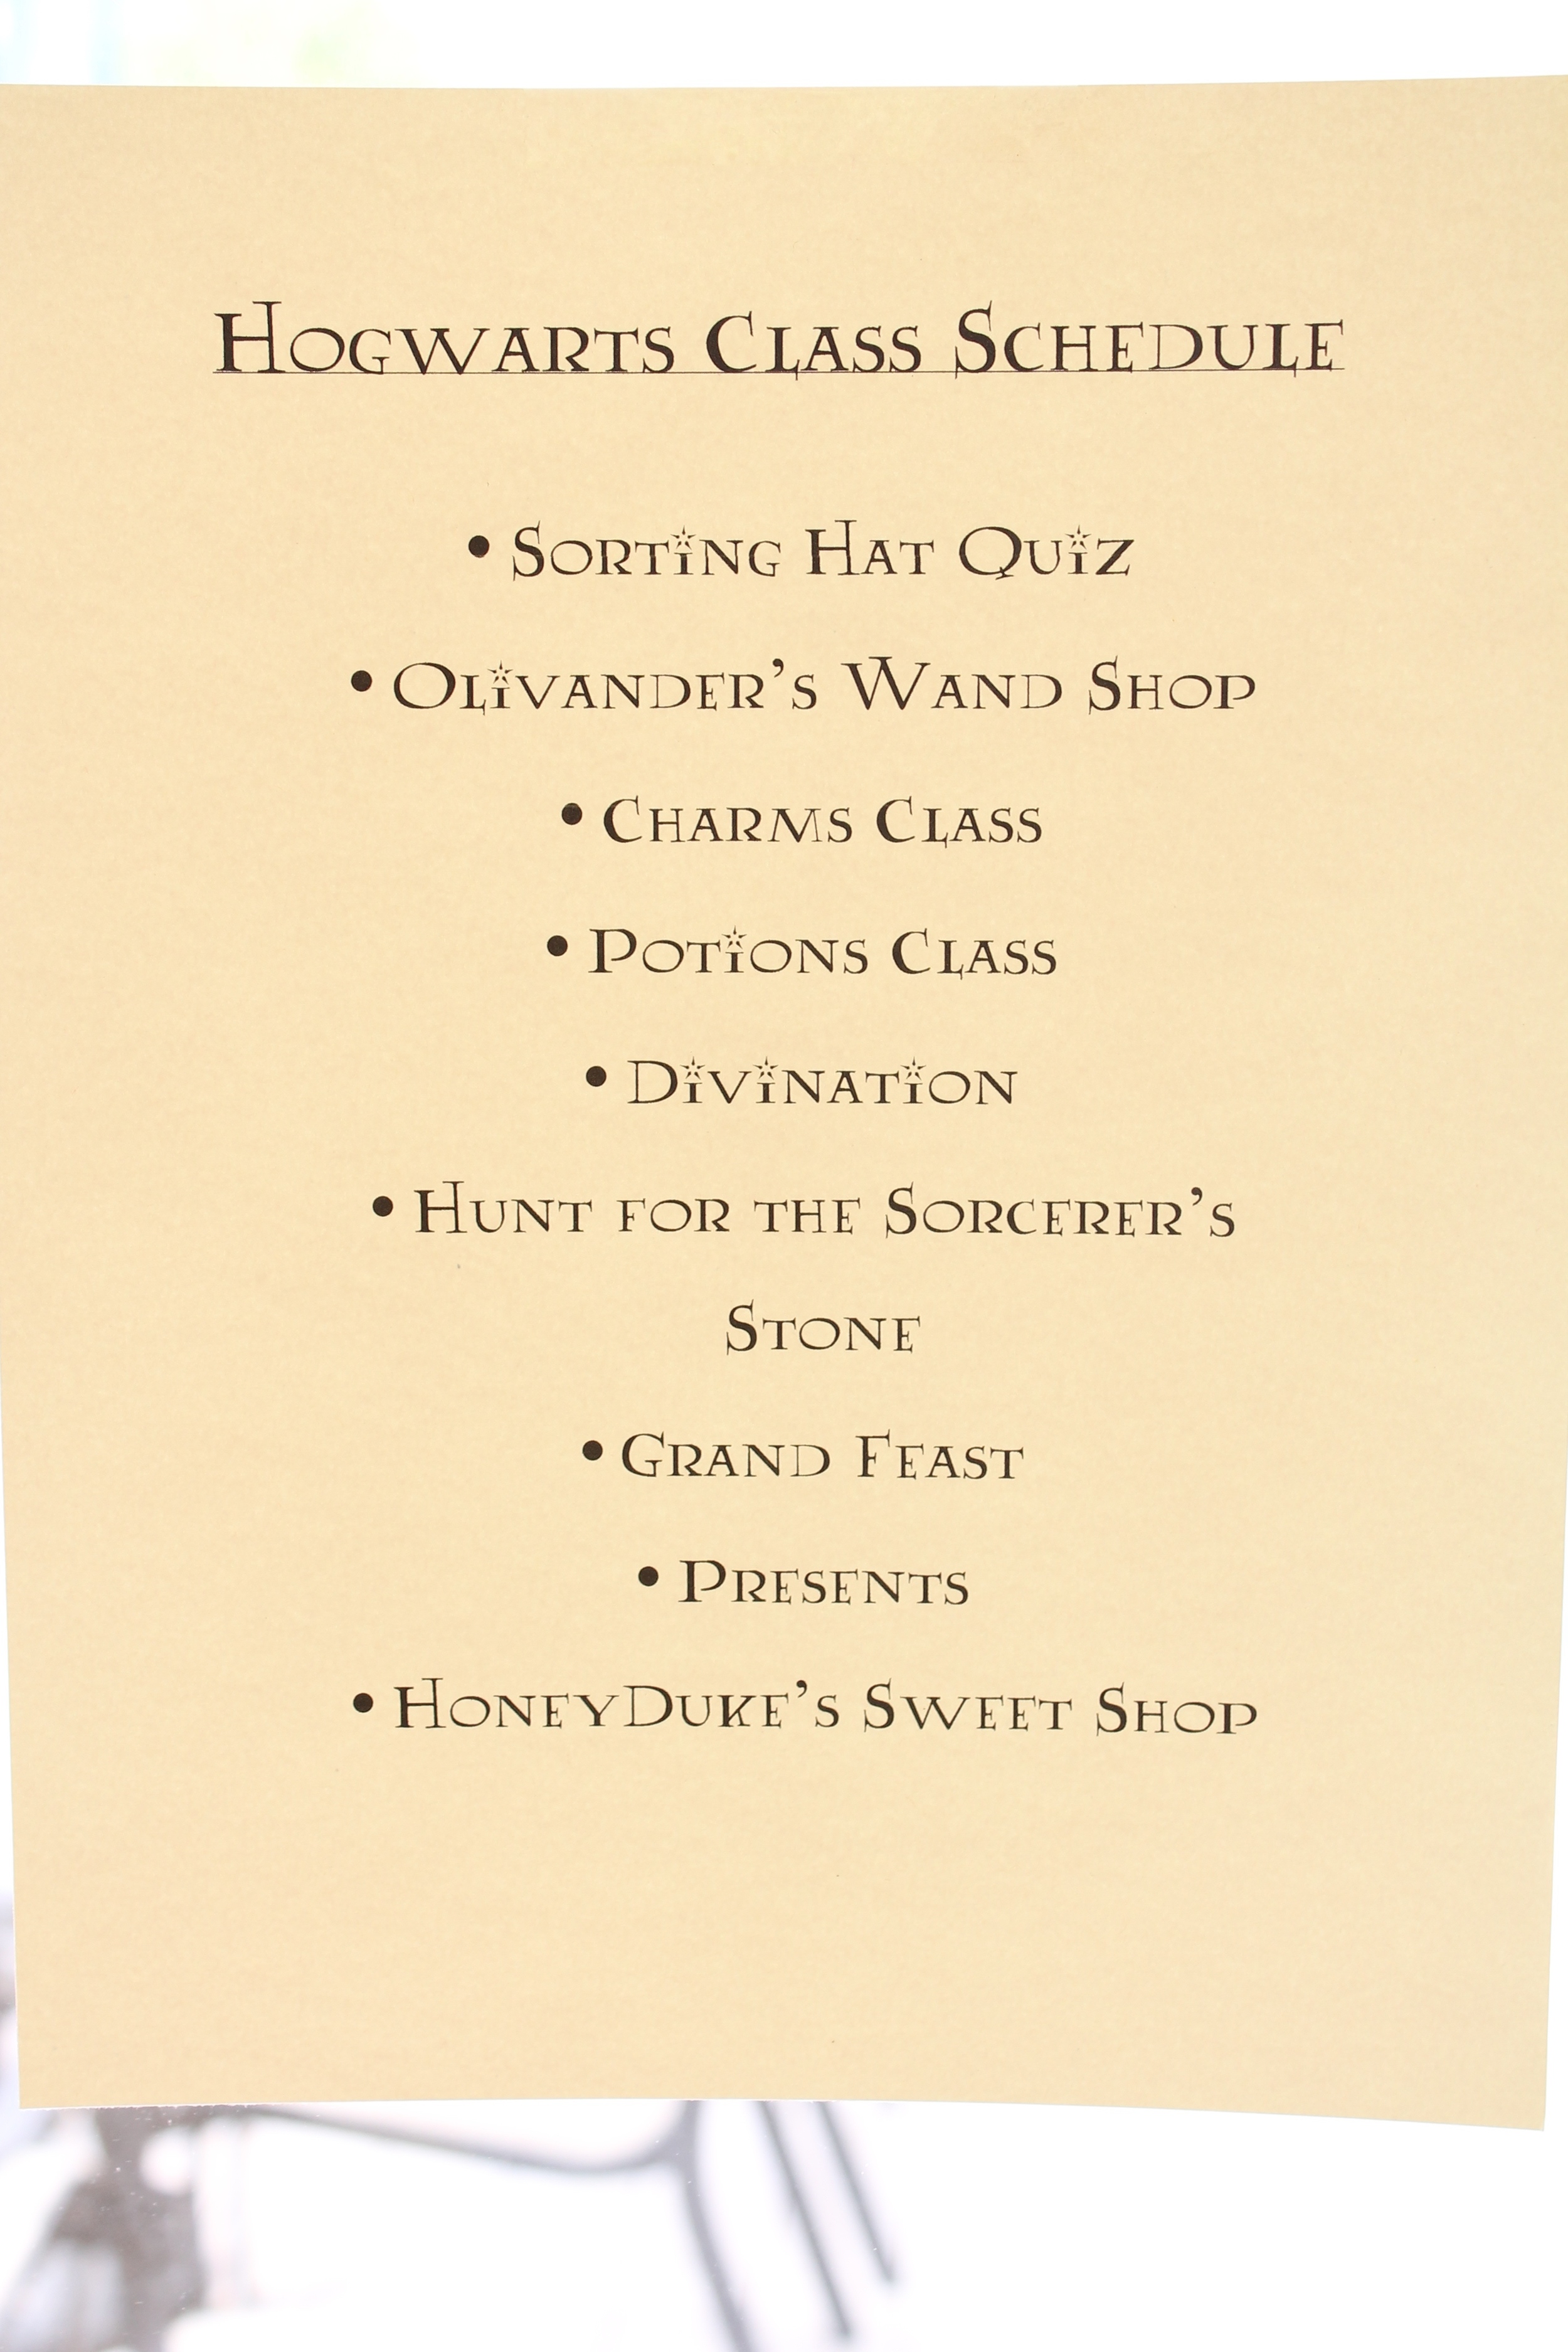 Hogwarts Class Schedule